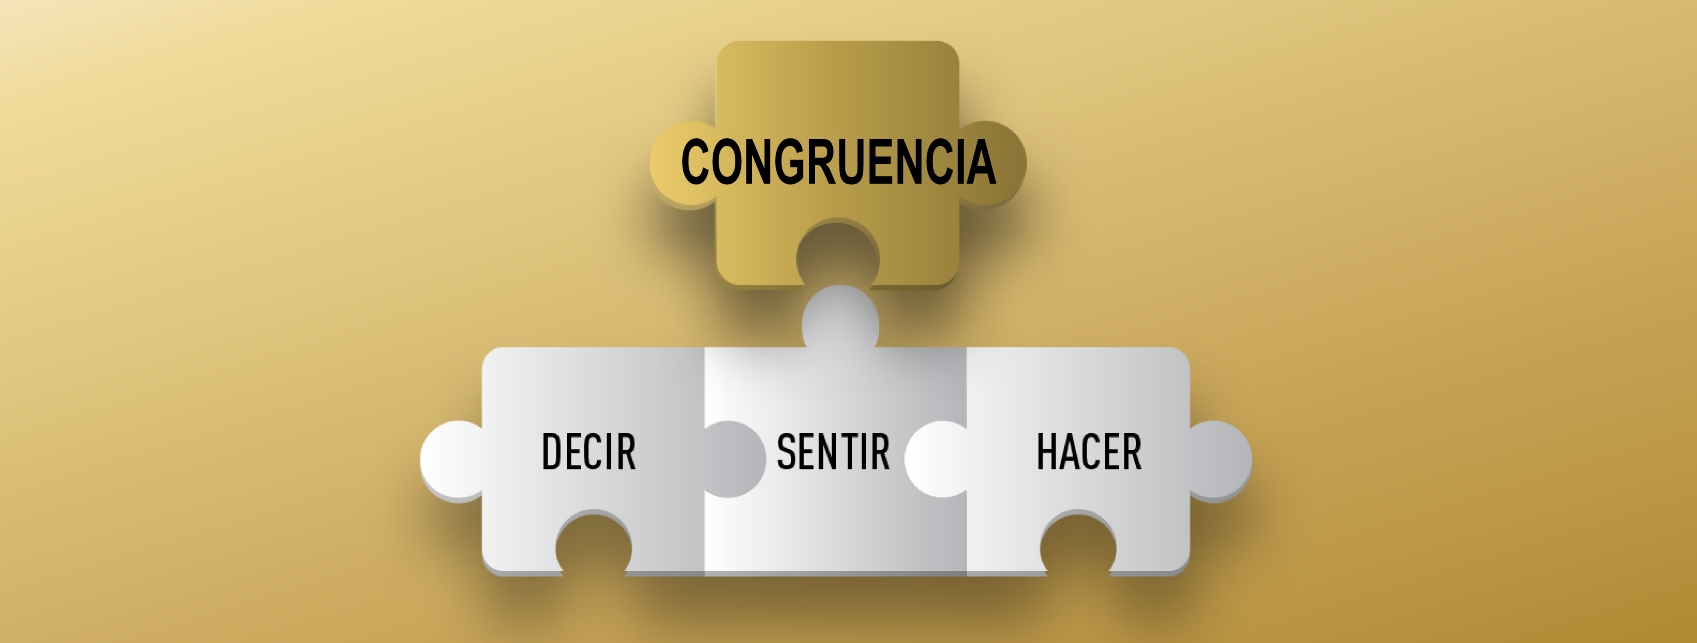 Diferencias entre coherencia y congruencia